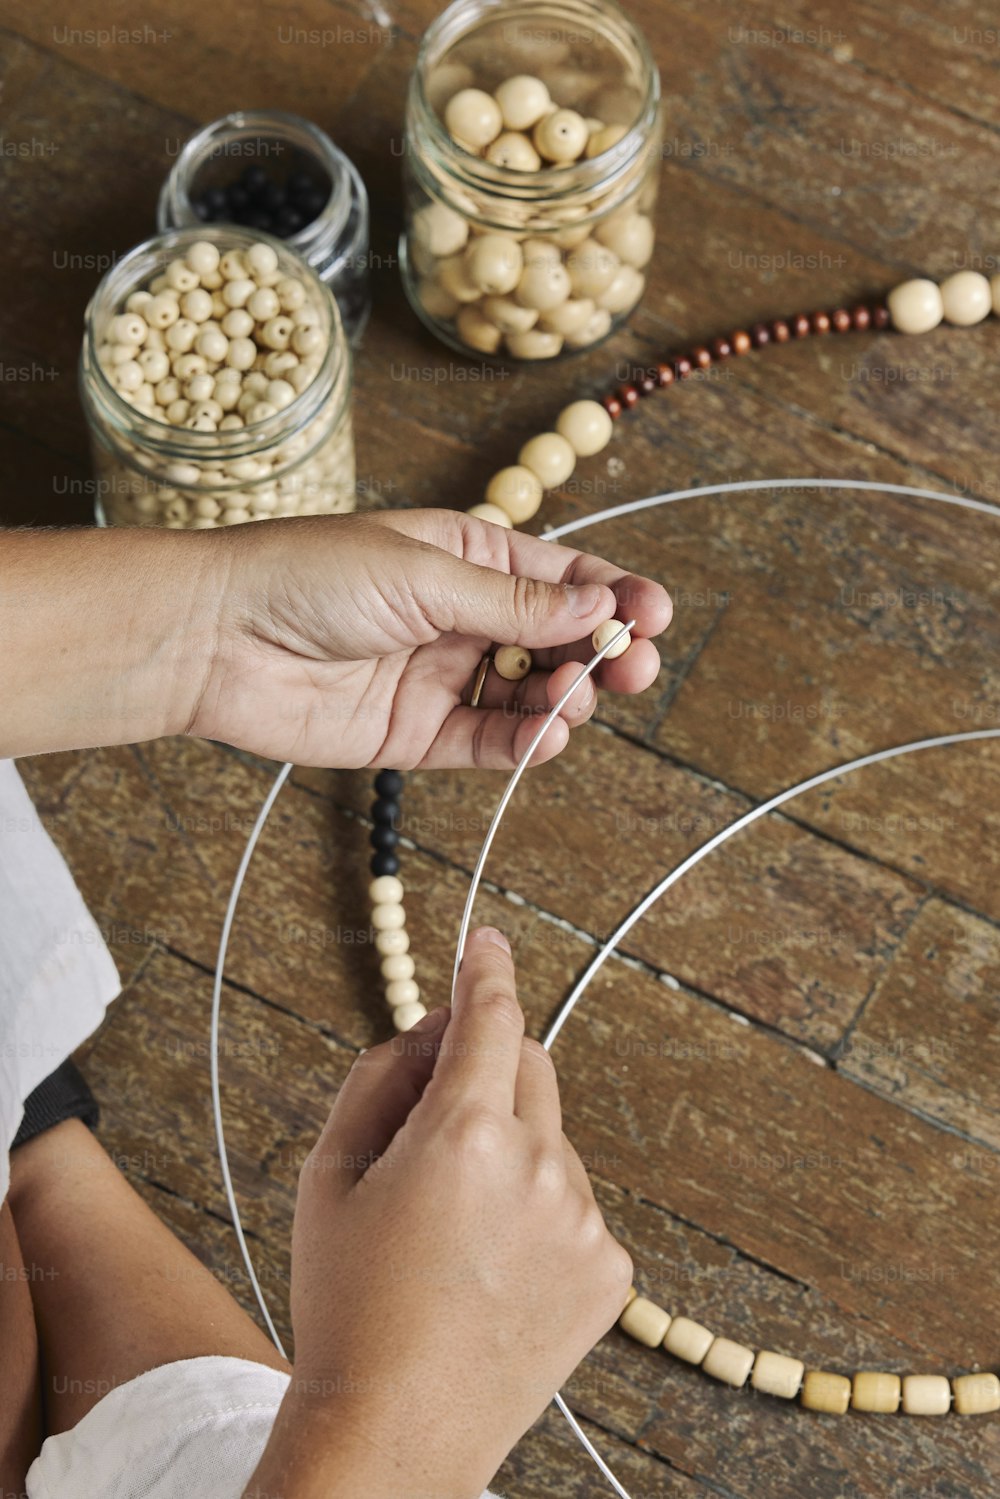 une personne fabrique un collier de perles avec des perles de bois